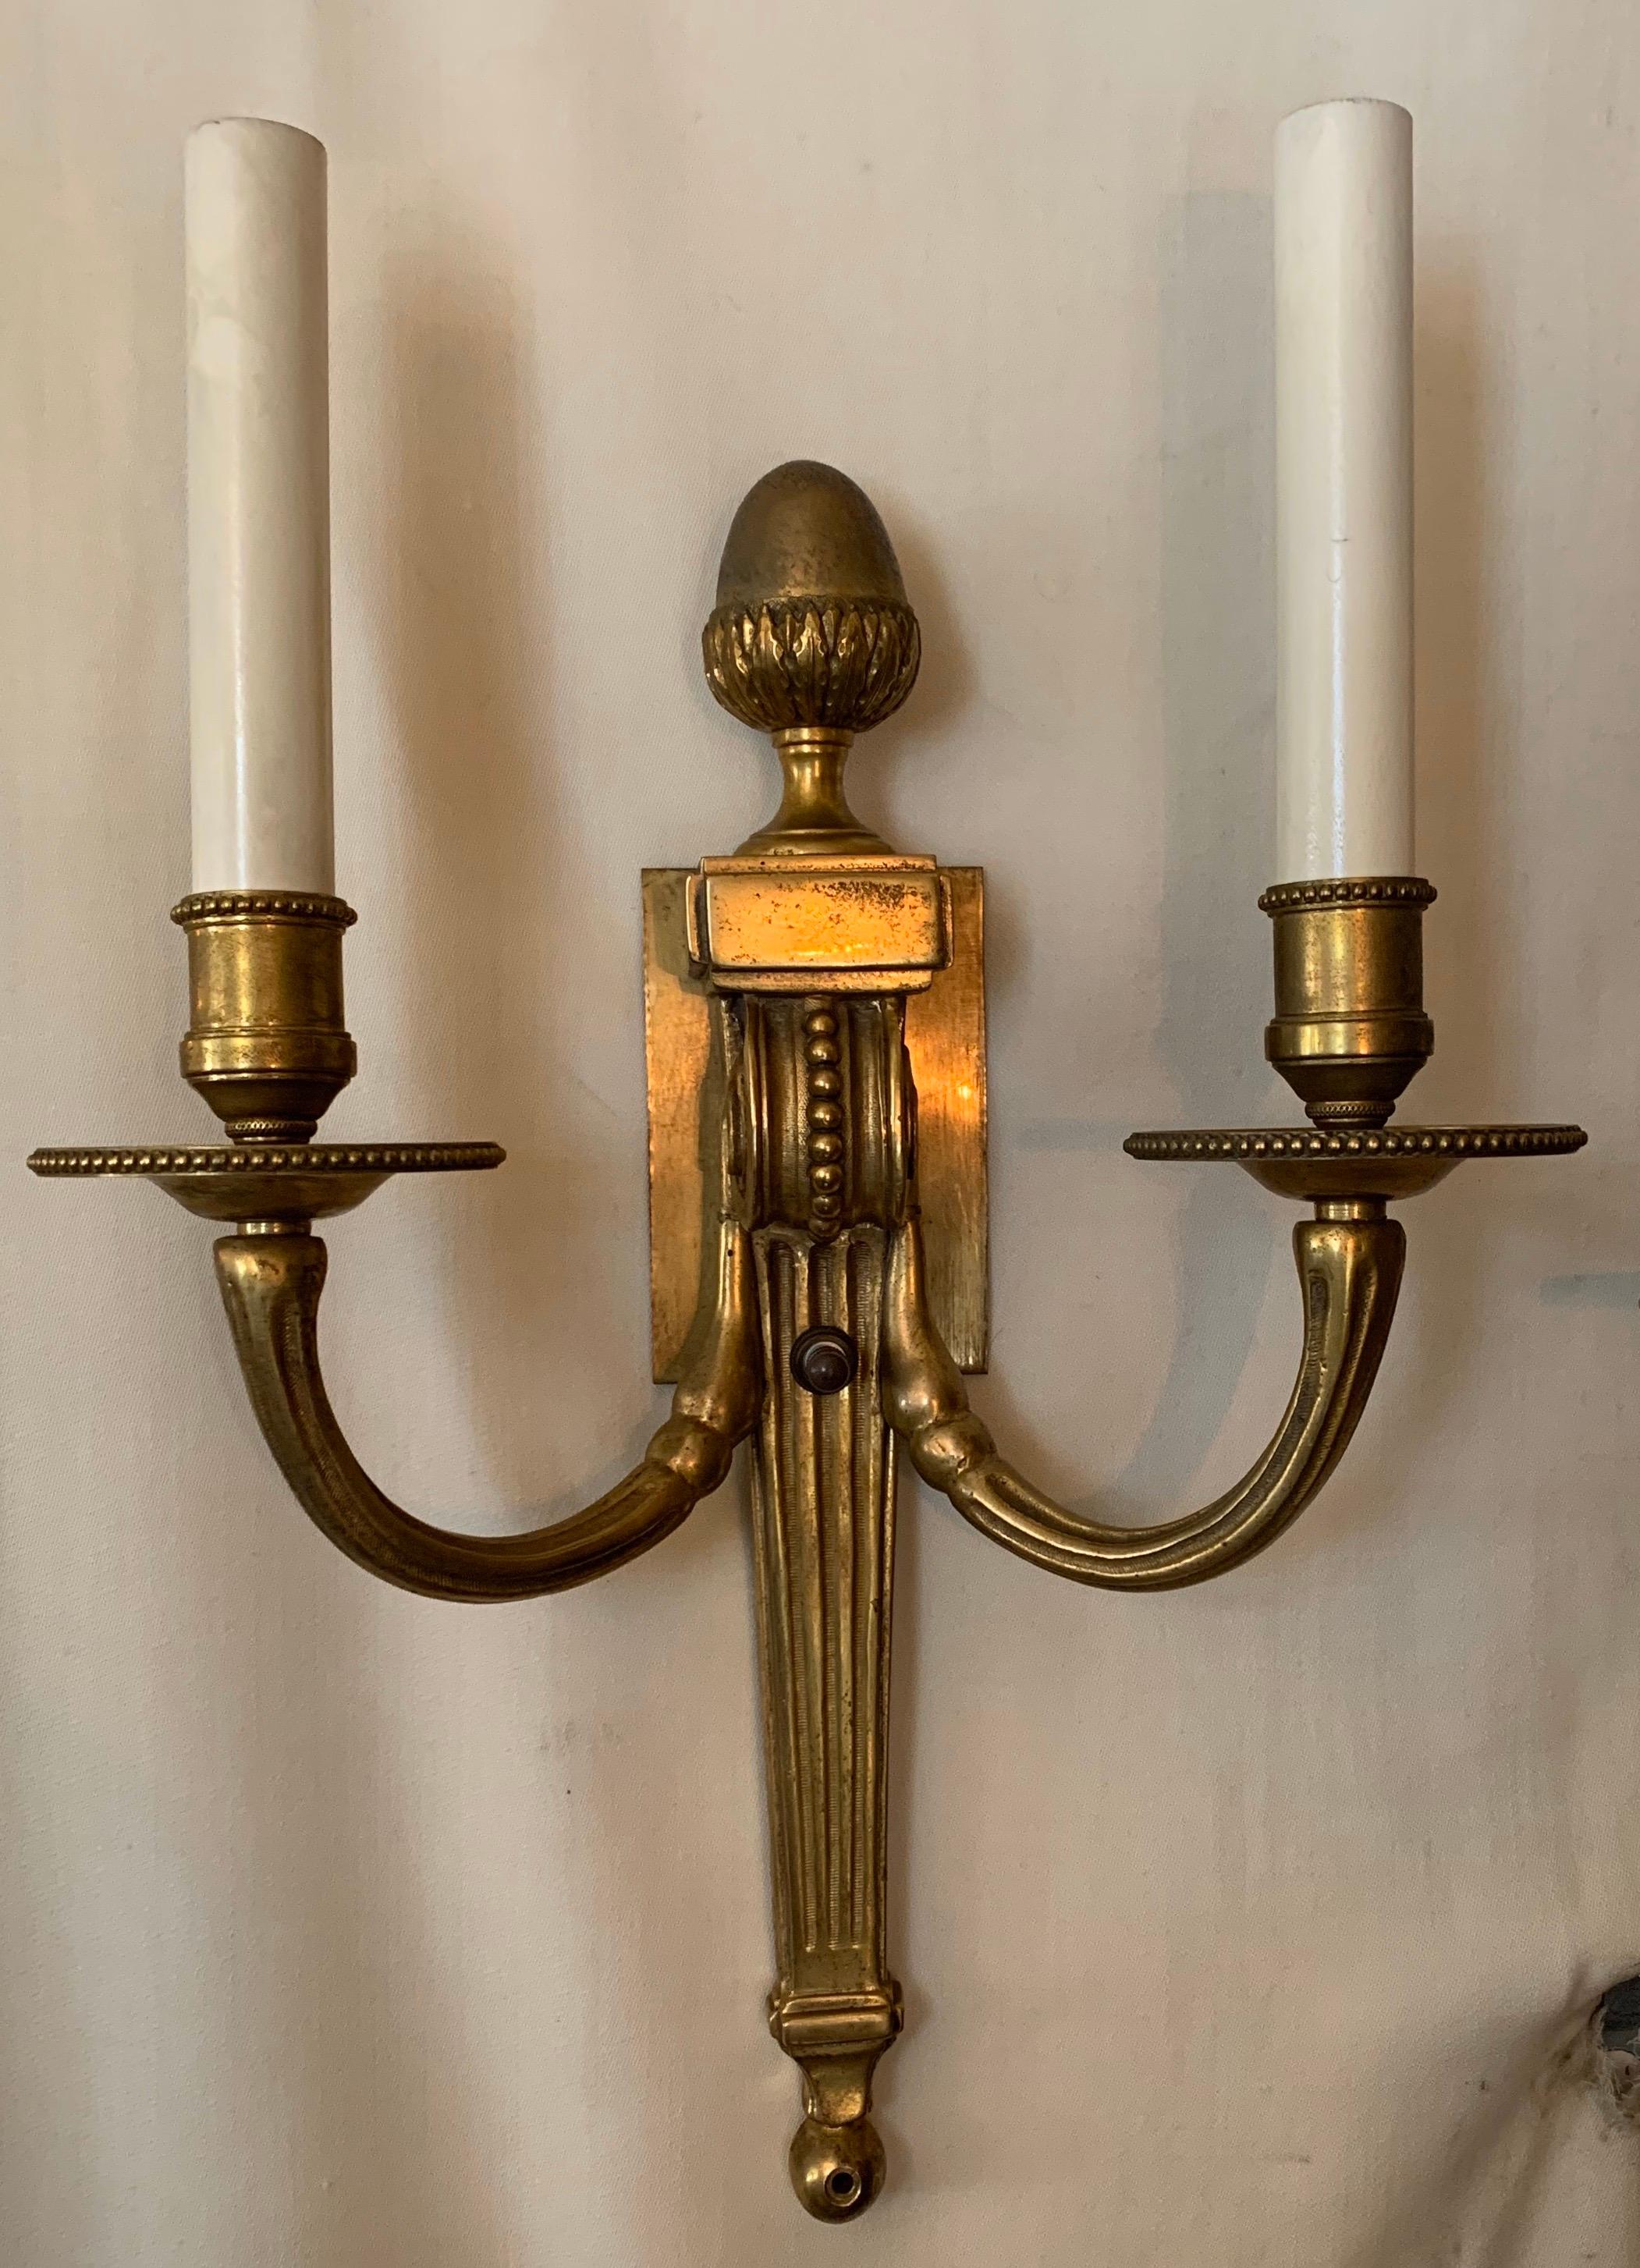 Une merveilleuse paire d'appliques en bronze Empire / néoclassique à deux candélabres en forme d'urne de la manière de E.F. Caldwell.